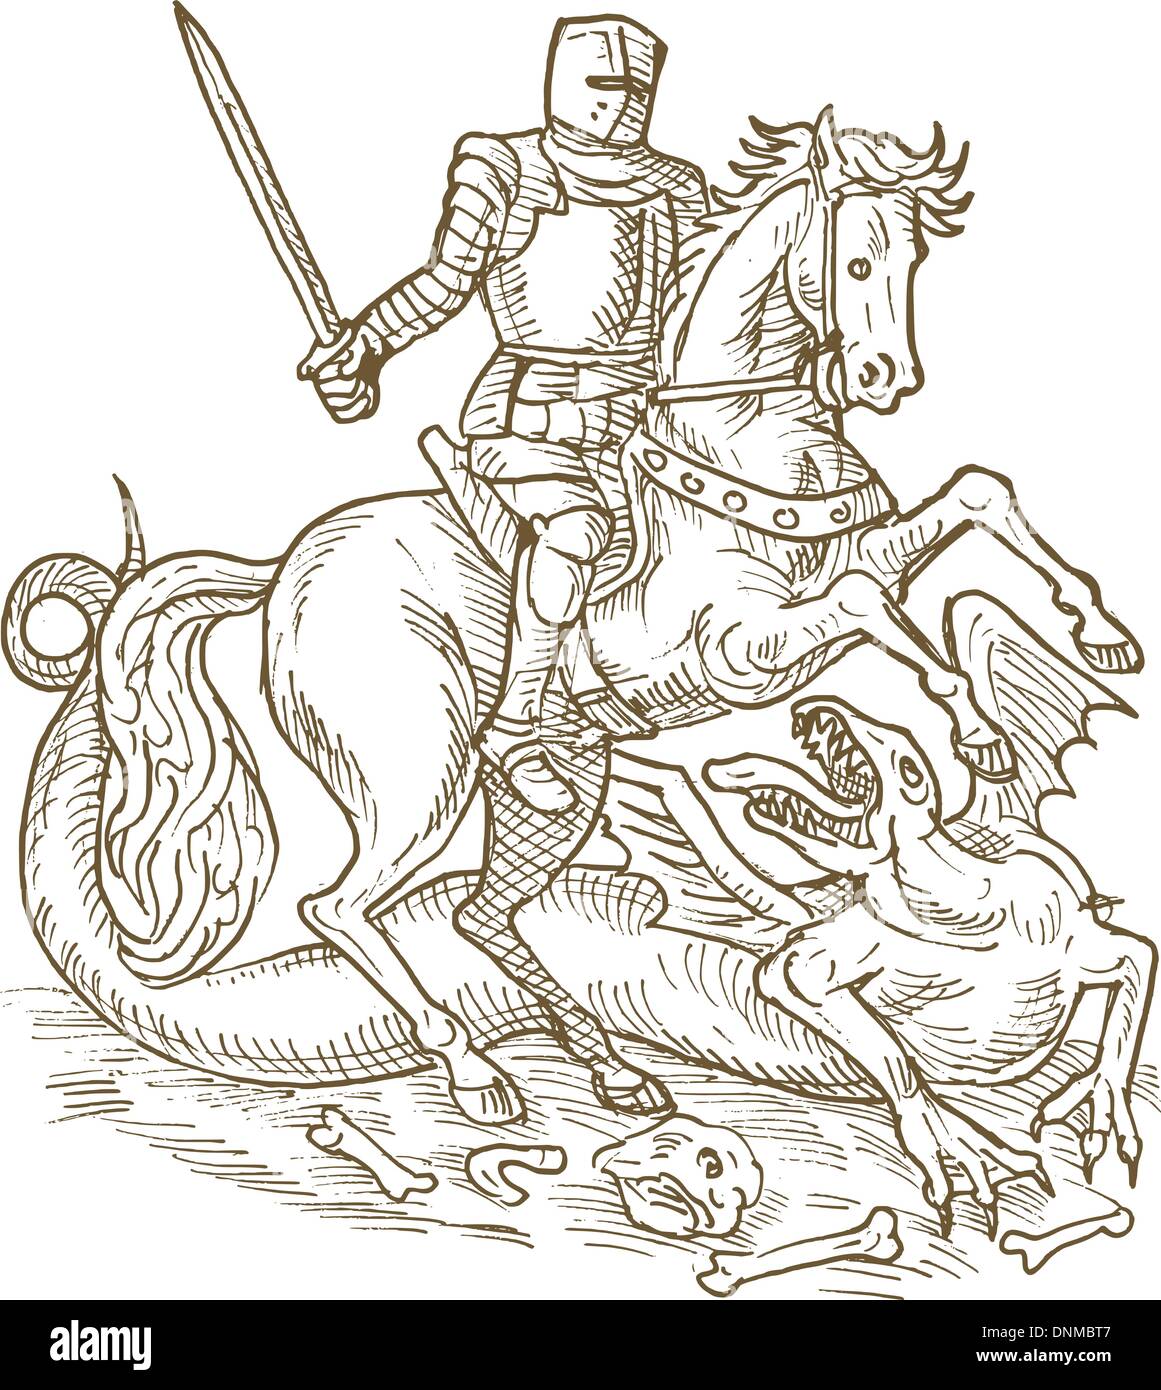 Zeichnung von Ritter St. Georg und dem Drachen fertig in schwarz / weiß Stock Vektor